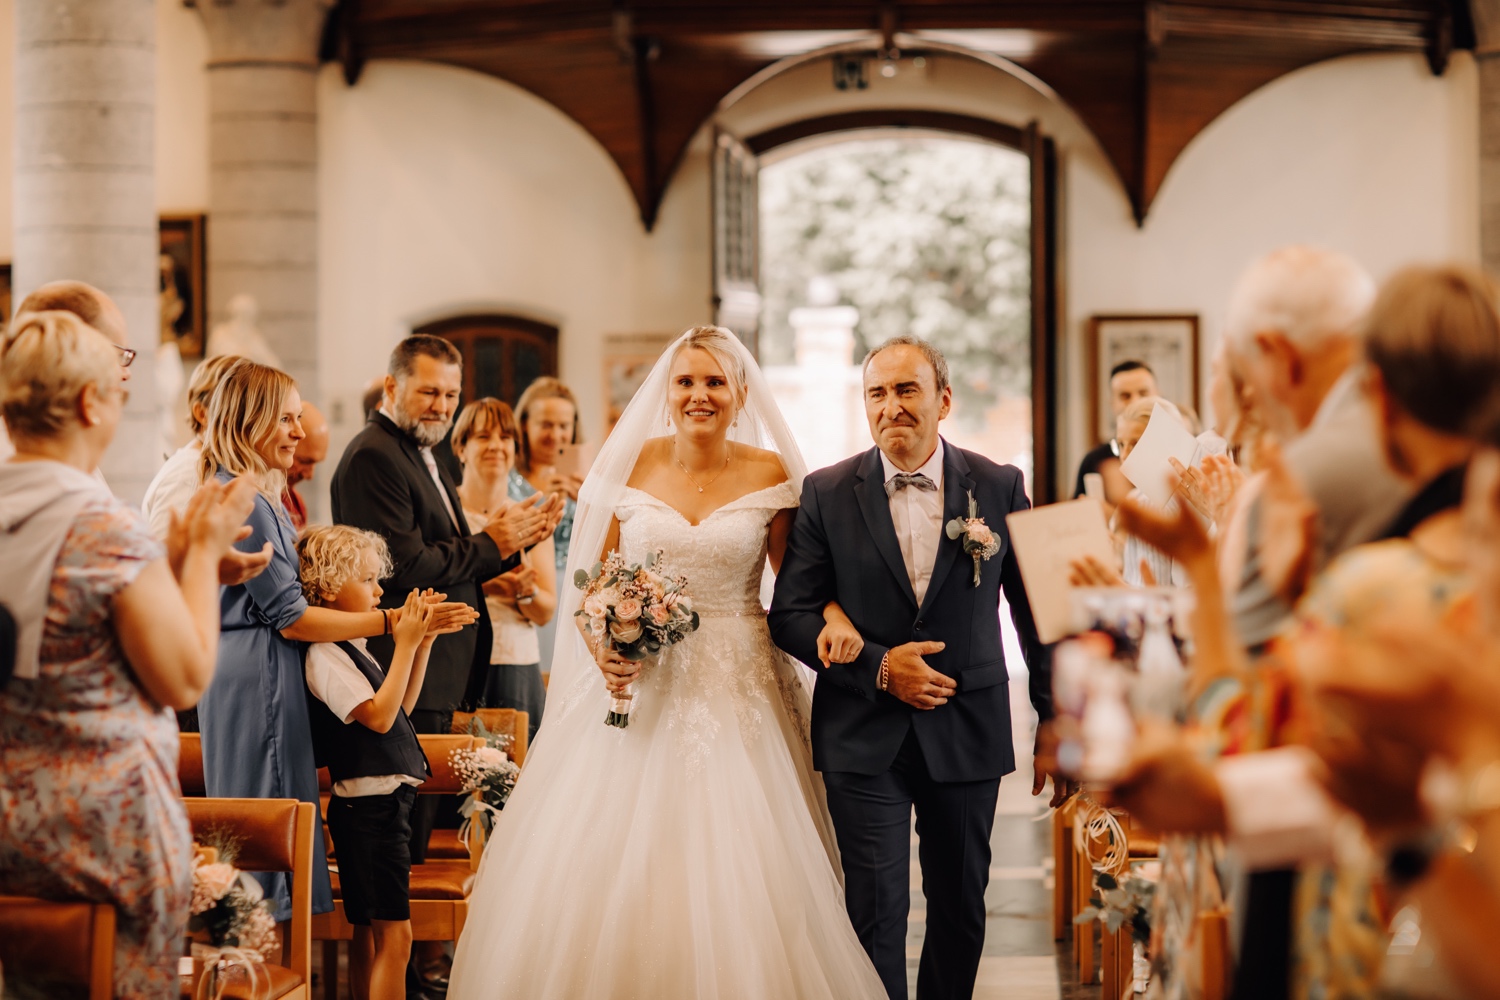 Huwelijksfotograaf Limburg - bruid maakt haar intrede in de kerk met haar vader